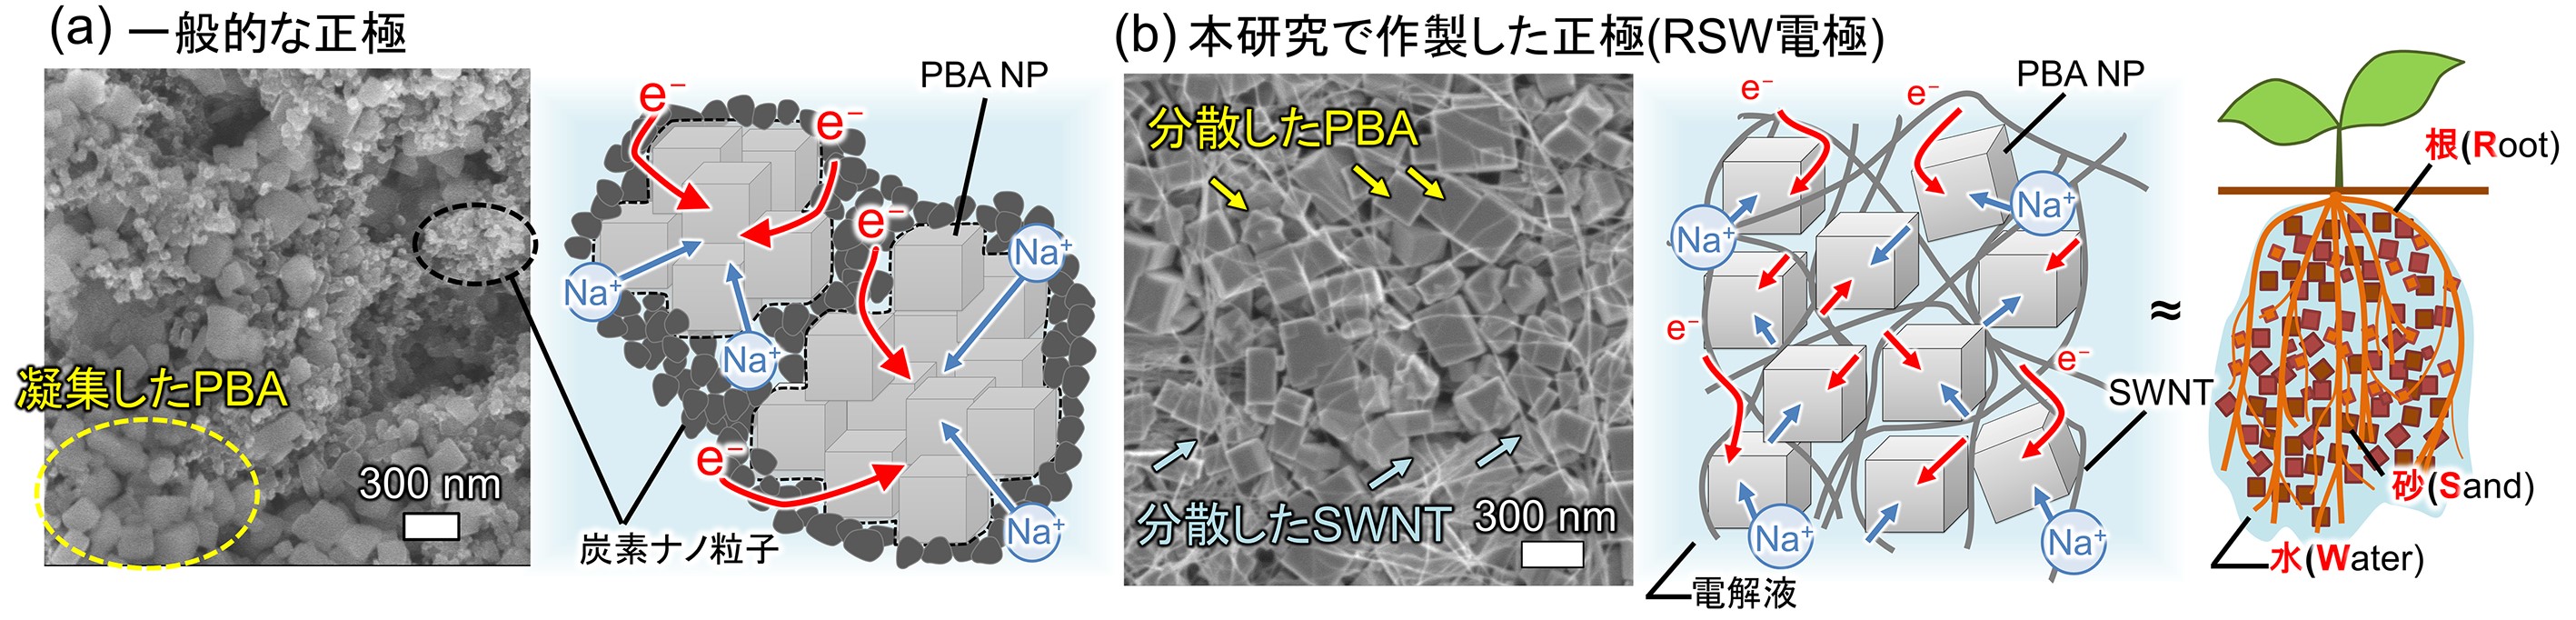 図2. (a)既存法で作製した正極および(b)本研究で作製した正極の電子顕微鏡像および構造モデル。(b)の正極は、PBA NPが独立してSWNTに接することで電子の伝導経路を有する。また、ナノ粒子間のナノ細孔が迅速な電解質イオン移動（拡散）を可能としている。の画像